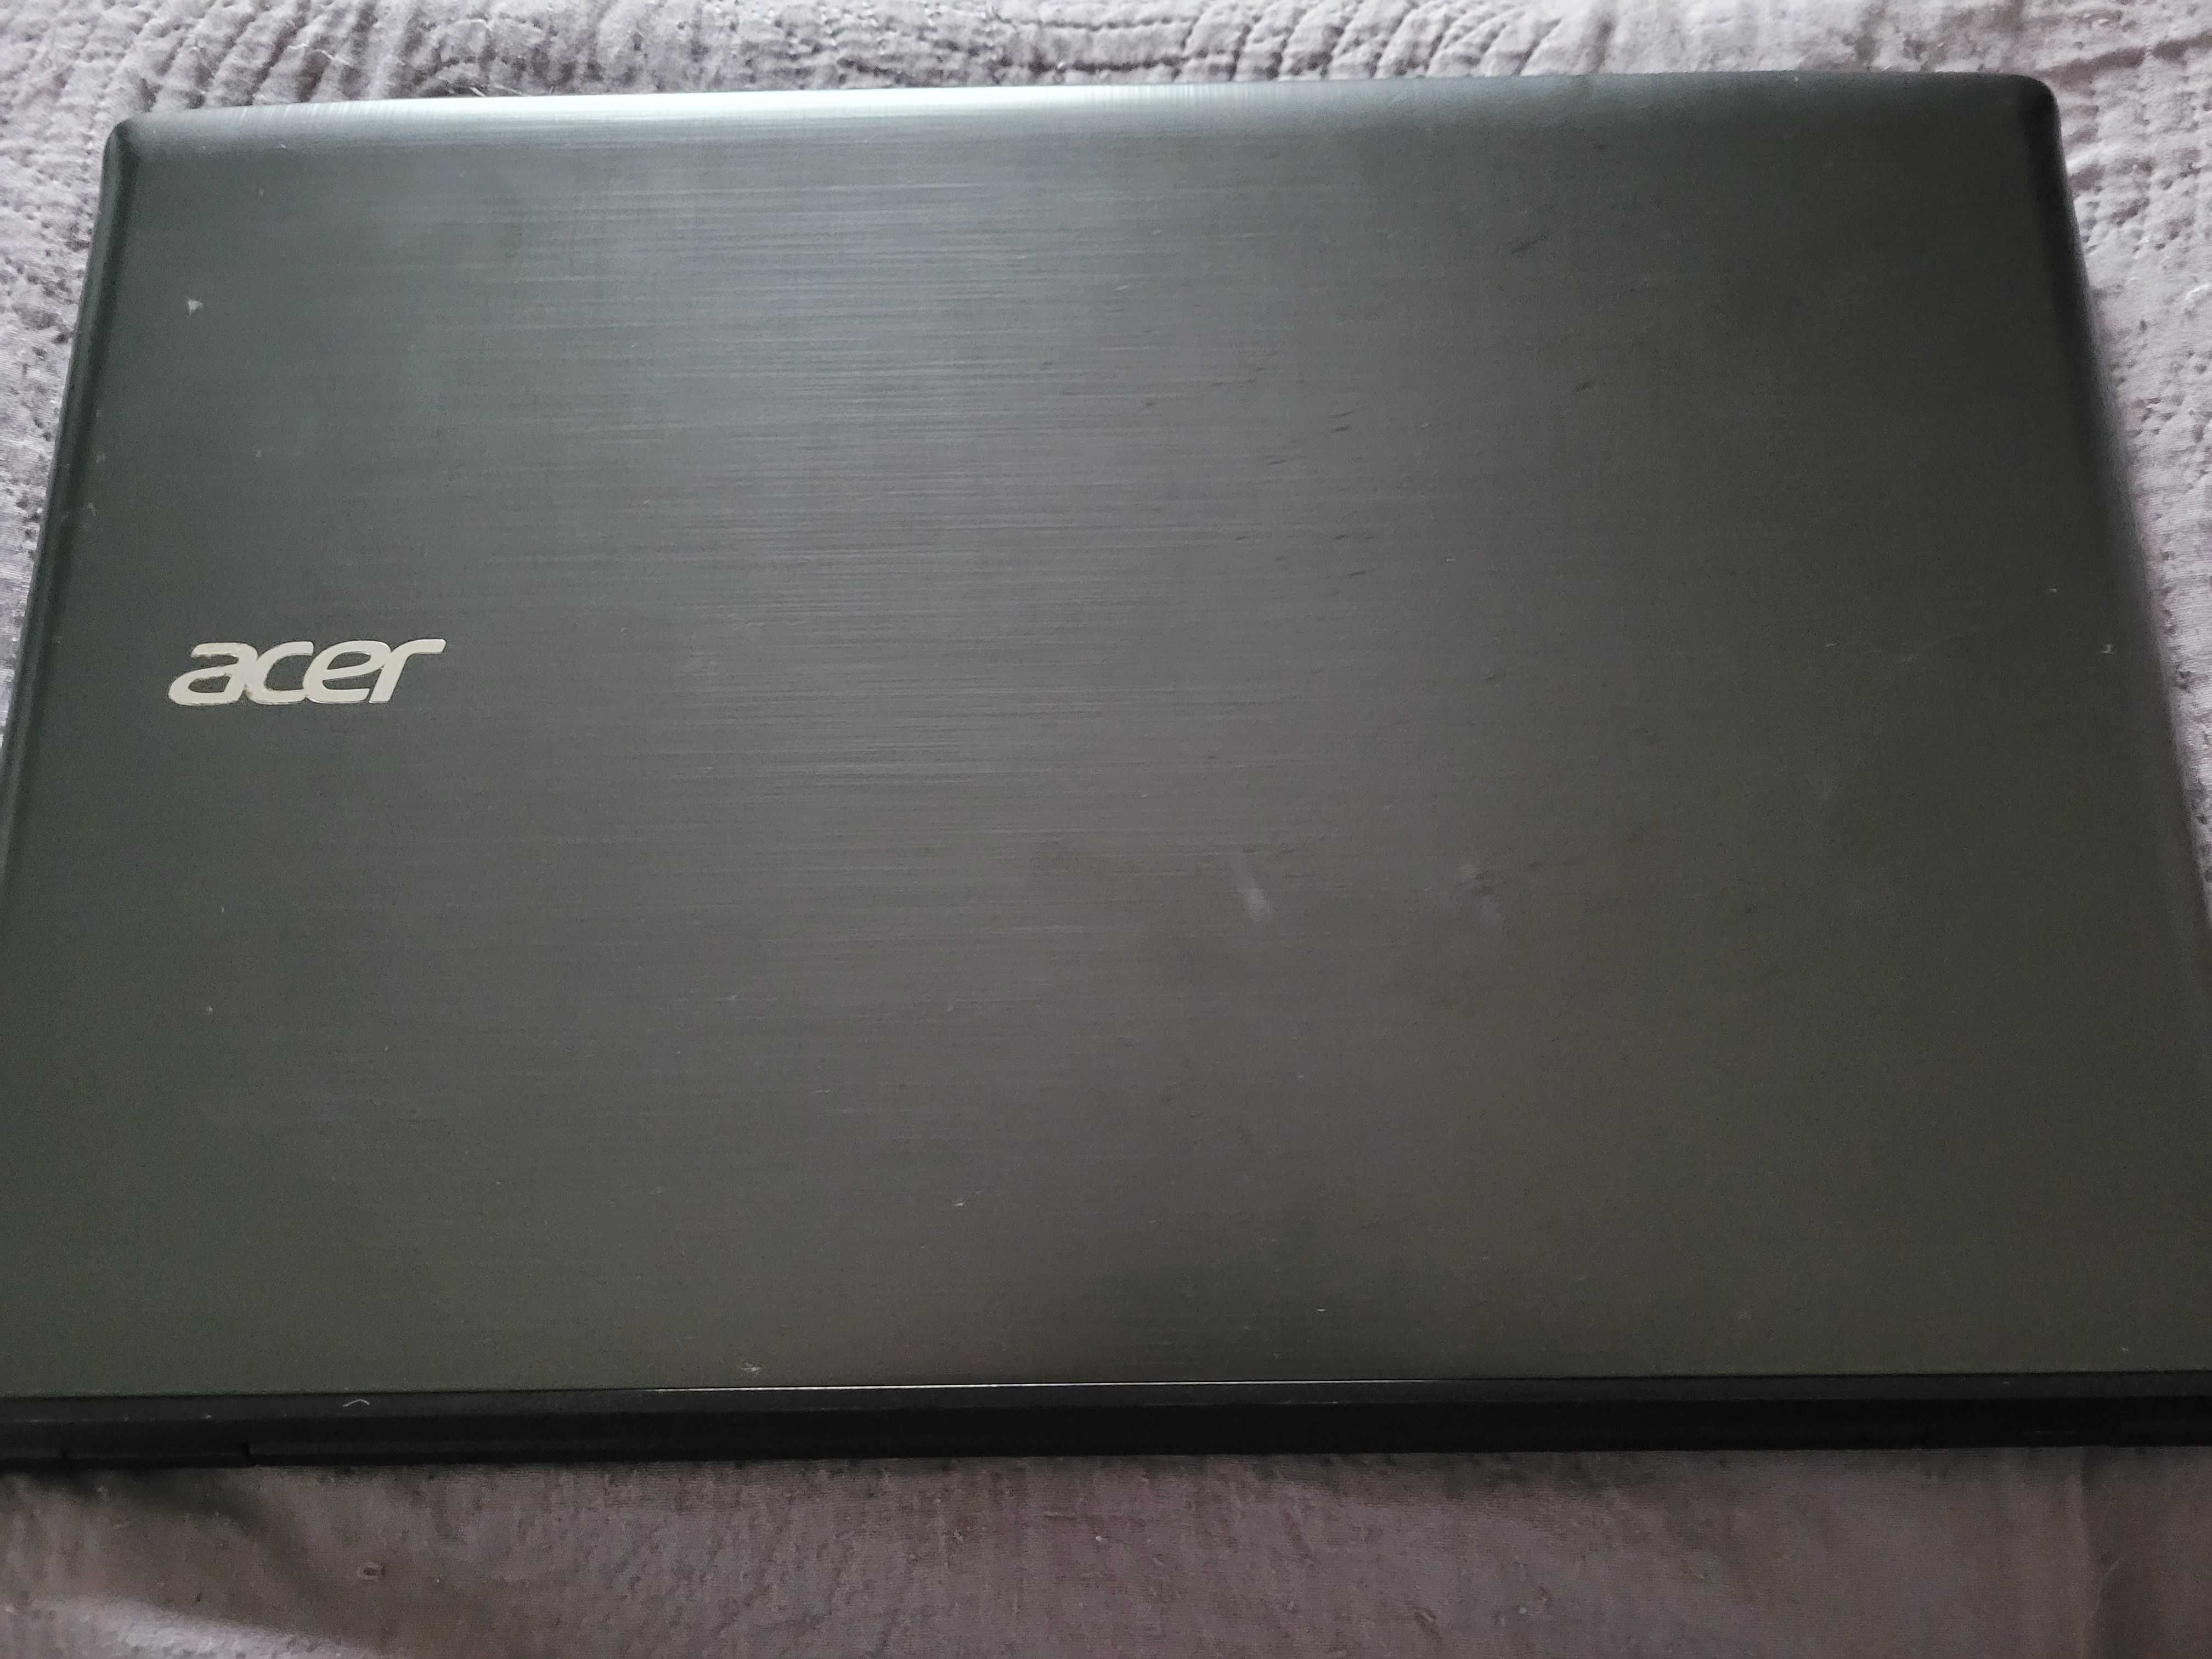 Laptop Acer Aspire Skylake I3-6060U, 2.90 GHz 8 Gb DDR4 SSD 256 Gb